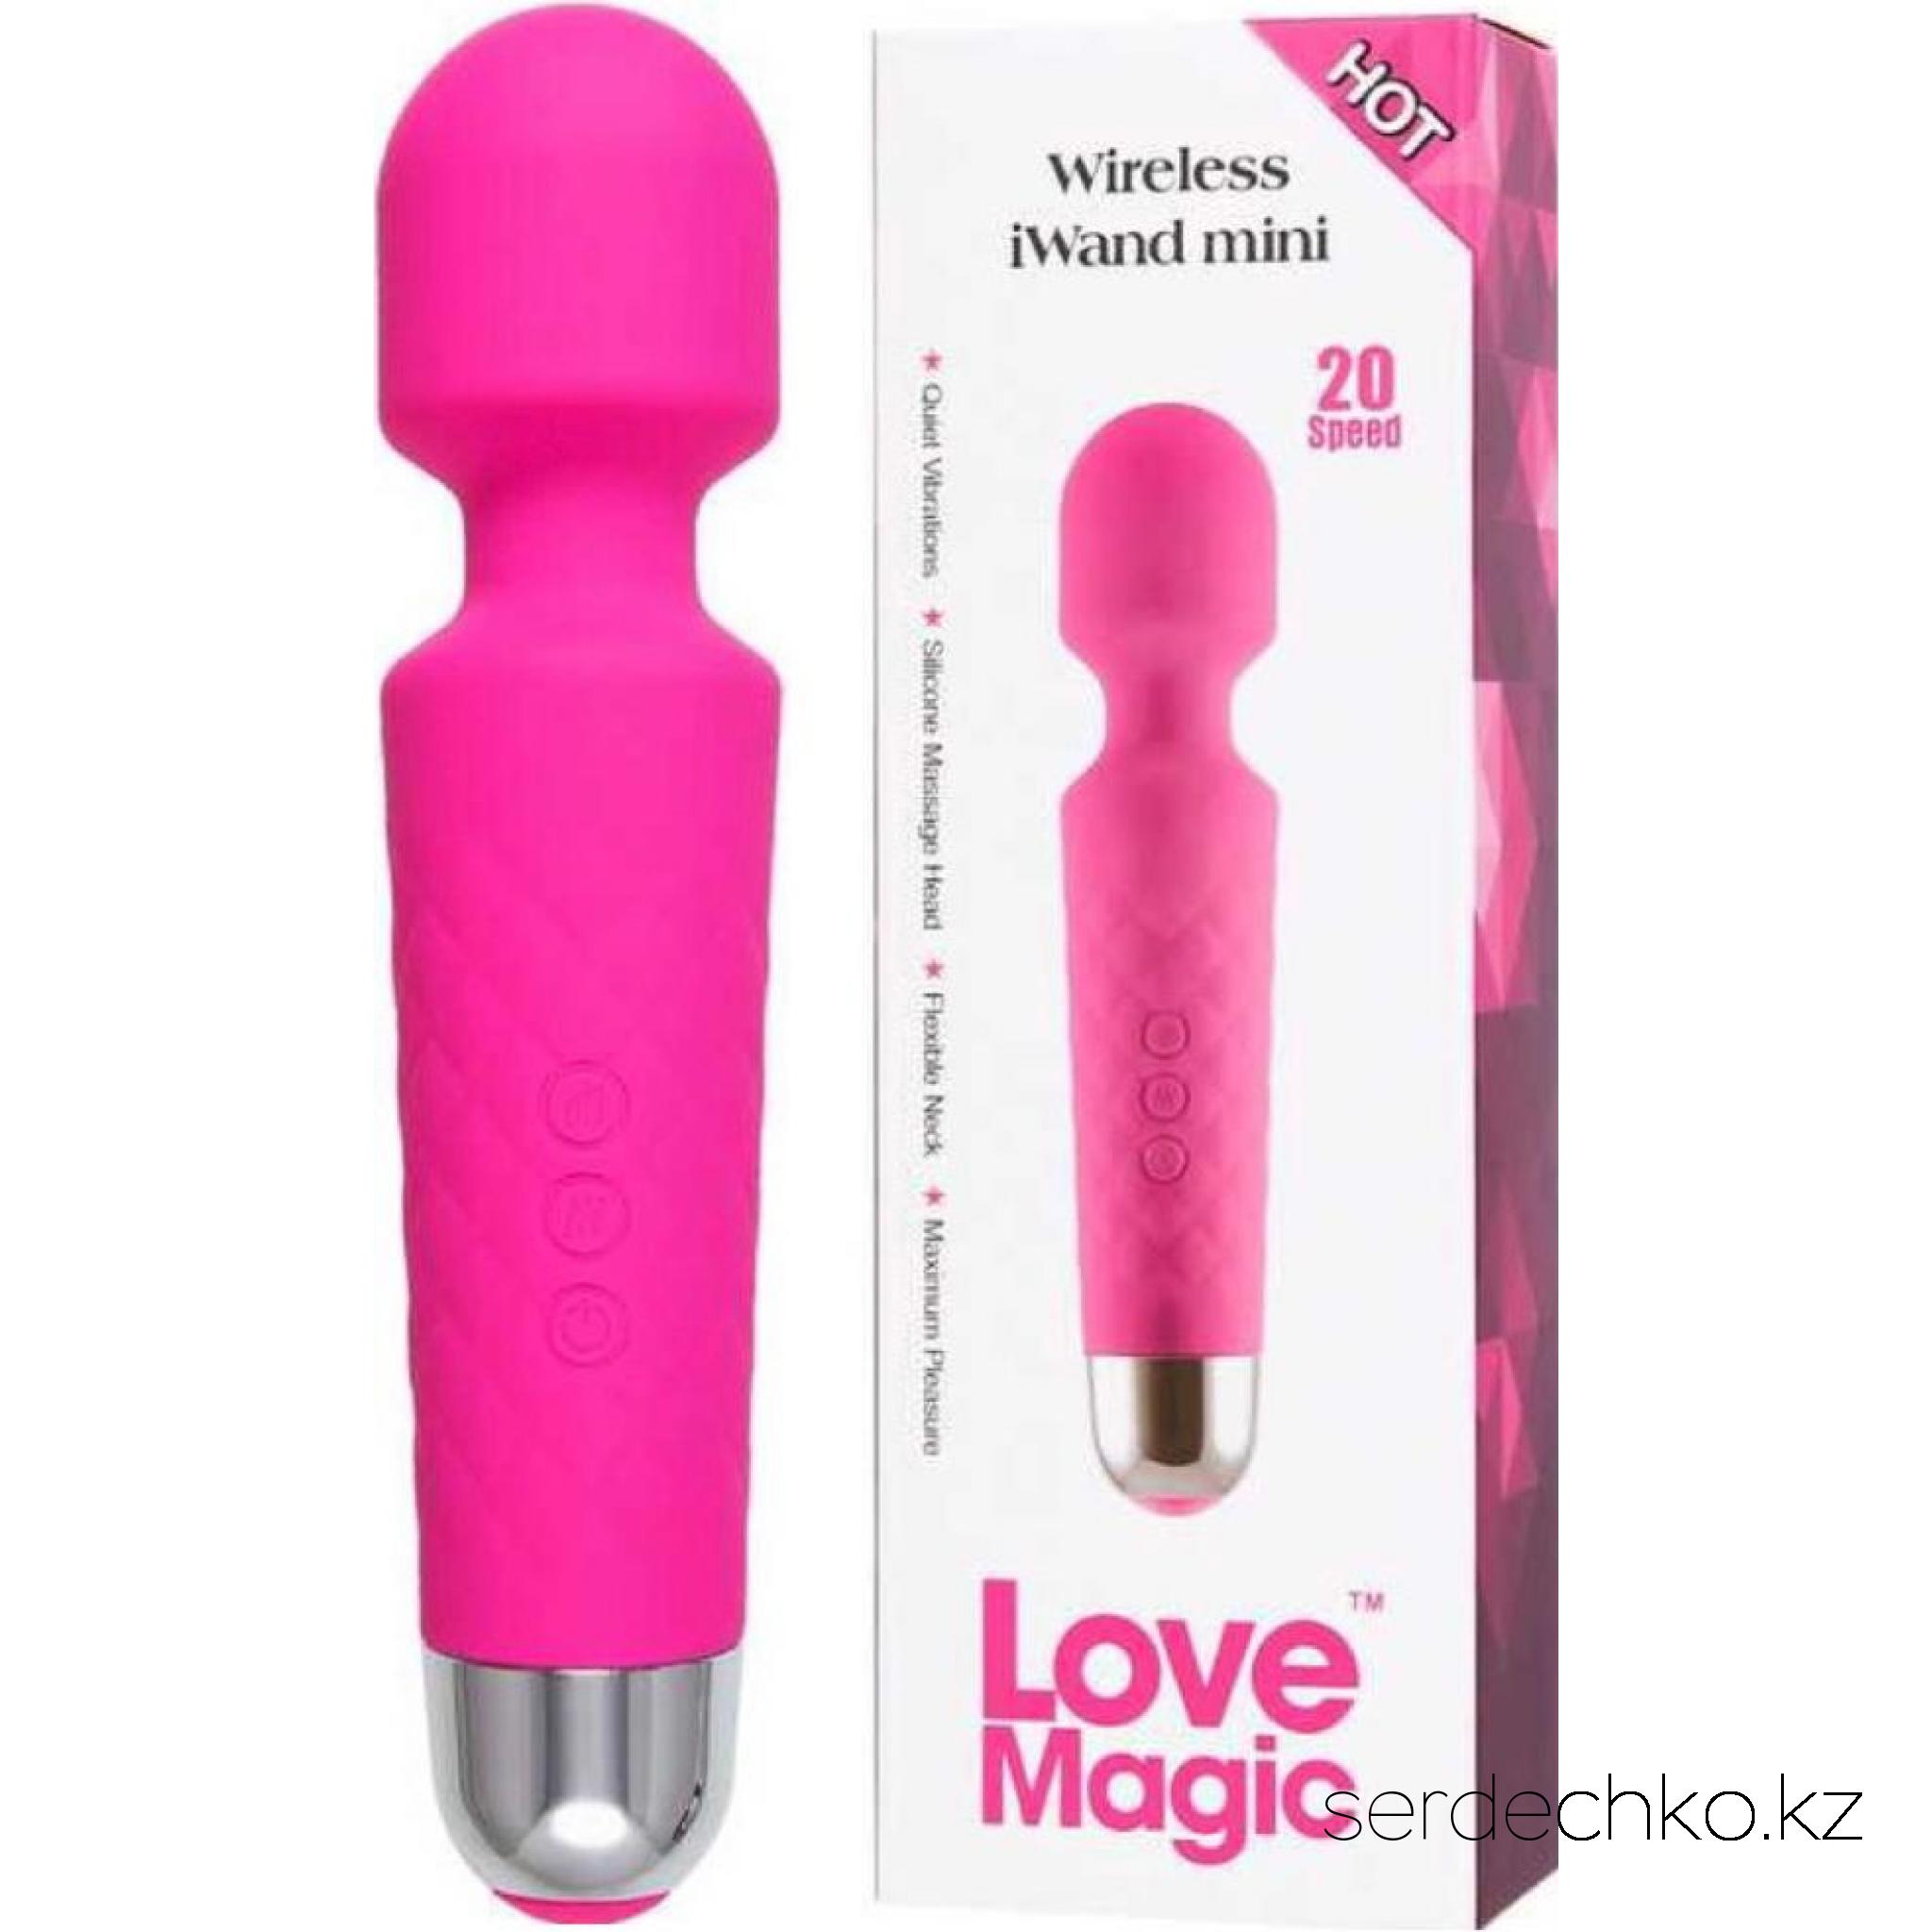 Вибромассажер Love Magic, беспроводной, силикон, розовый, 
	Популярный вибромассажер Love Magic яркого розового цвета станет незаменимым спутником для каждой девушки. Знаменитый вибромассажер, напоминающий микрофон, имеет гладкое шелковистое покрытие - силикон высокого качества, такой нежный и абсолютно безопасный.

	Подвижная головка гнется под углом на 270 градусов, что значительно расширяет область применения игрушки - каждый изгиб тела получит непревзойденную вибрацию и глубокое расслабление.

	Мощный мотор имеет 8 интенсивностей и 20 паттернов вибрации для нежной или сверх-проникающей стимуляции даже самых чувствительных интимных зон.

	Беспроводная конструкция позволяет пользоваться девайсом в любом месте, не привязываясь к розеткам и удлинителям. Емкости аккумулятора хватает на 2 часа беспрерывной работы, а заряжается он от USB.

	Легкий массаж в душе или жаркие ласки в спальне - никто не узнает чем вы занимаетесь наедине со своими желаниями, ведь вибромассажер водонепроницаемый и негромкий.

	Компактный размер и легкий вес массажера для расслабления и сексуального наслаждения позволяет играть как в одиночку, так и в паре, стимулируя абсолютно любые части тела.

	
		
			Материал: силикон
	
	
		
			Длина: 20 см
	
	
		
			Диаметр головки: 3,94 см
	
	
		
			Время работы: 2 часа
	
	
		
			Время зарядки: 90 минут
	
	
		
			Вес: 310 гр
	

